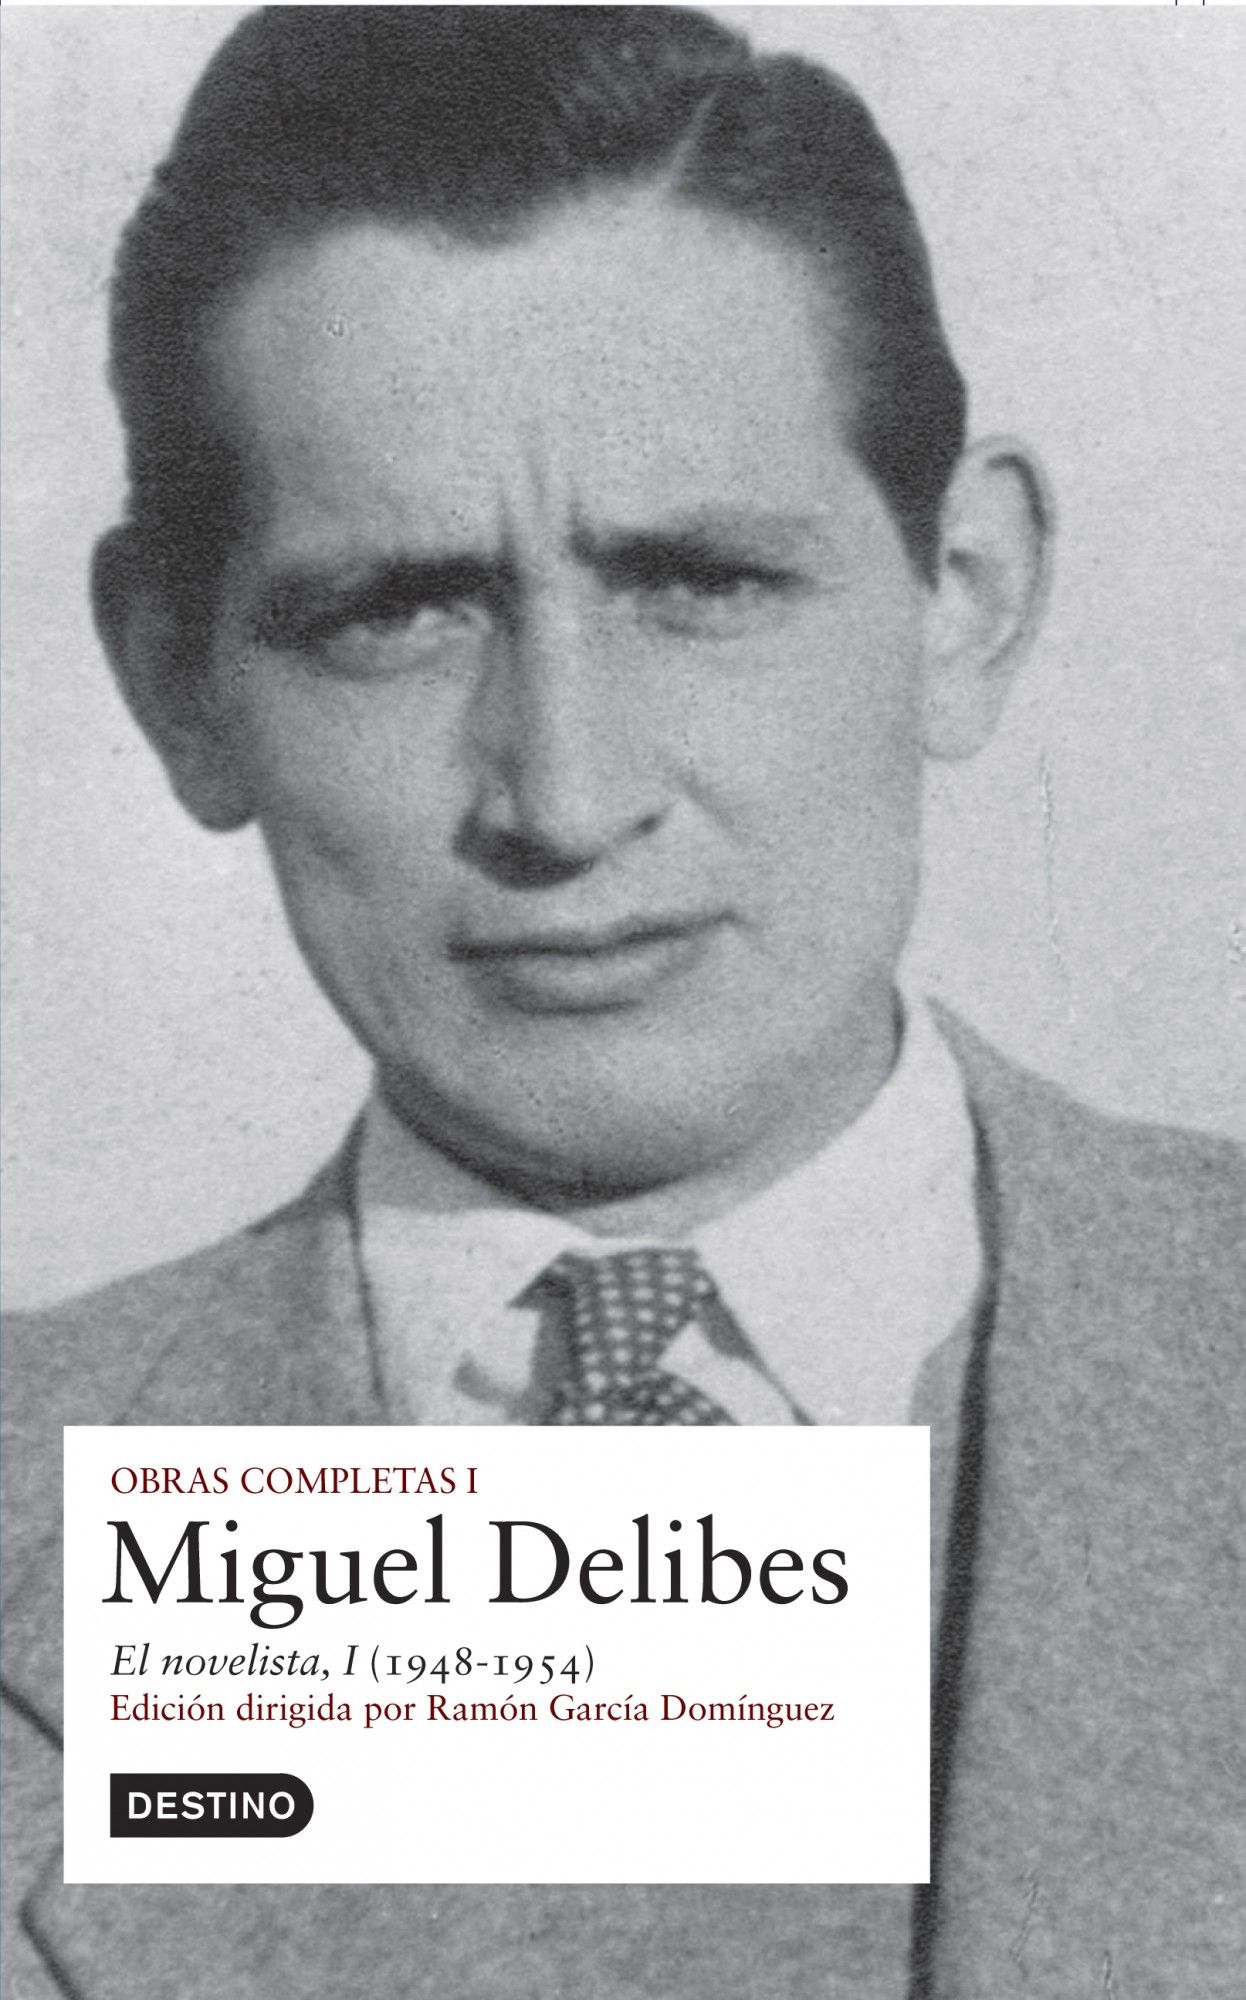 O.C. MIGUEL DELIBES VOL. I. 